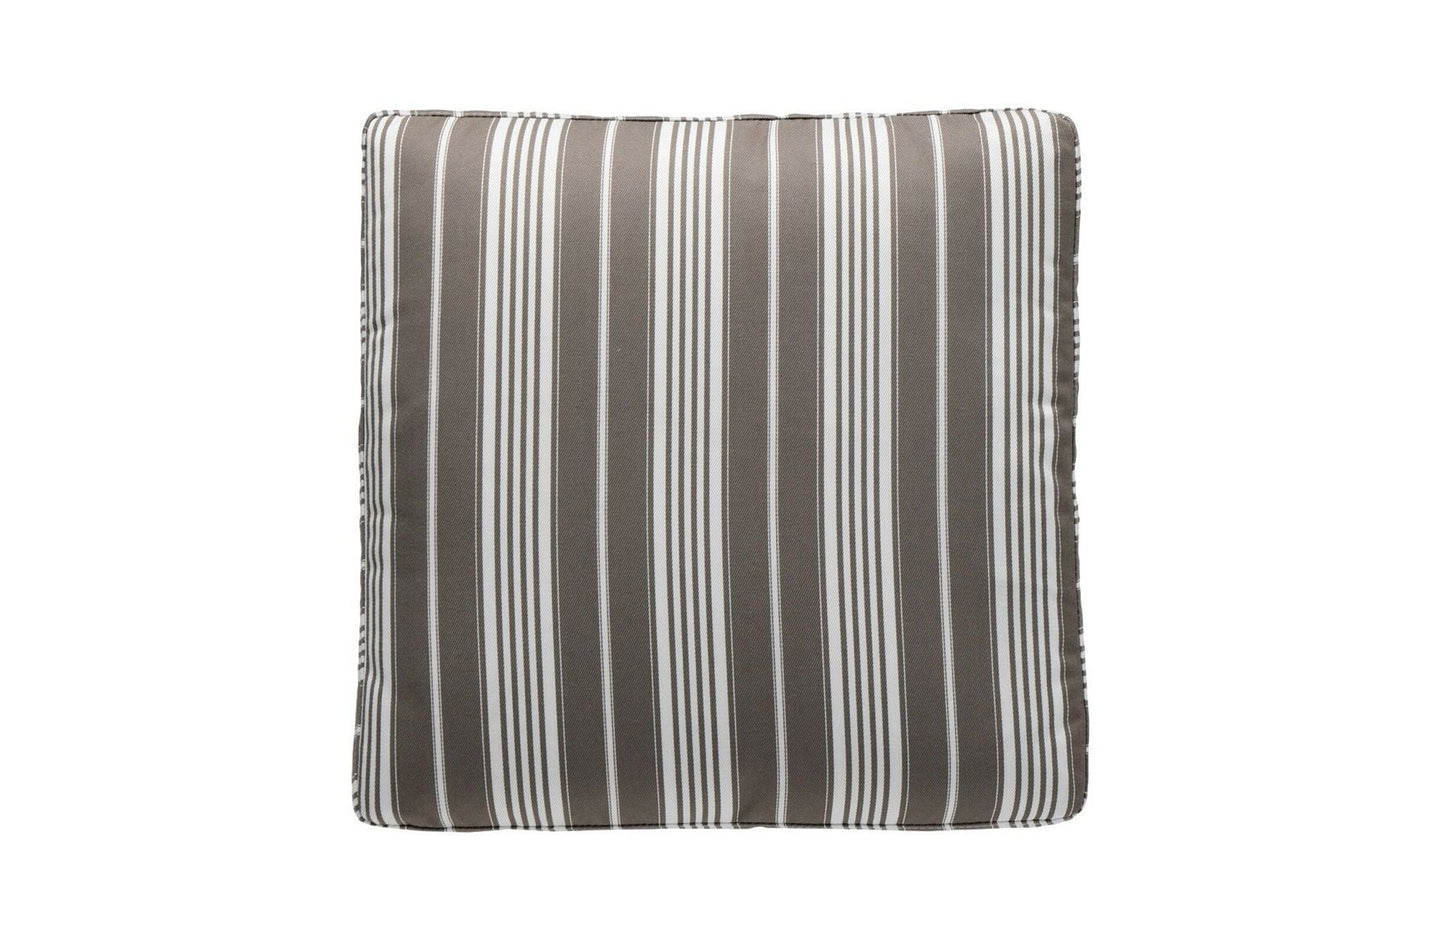 Stripes Outdoor Cushion 48x48 cm
